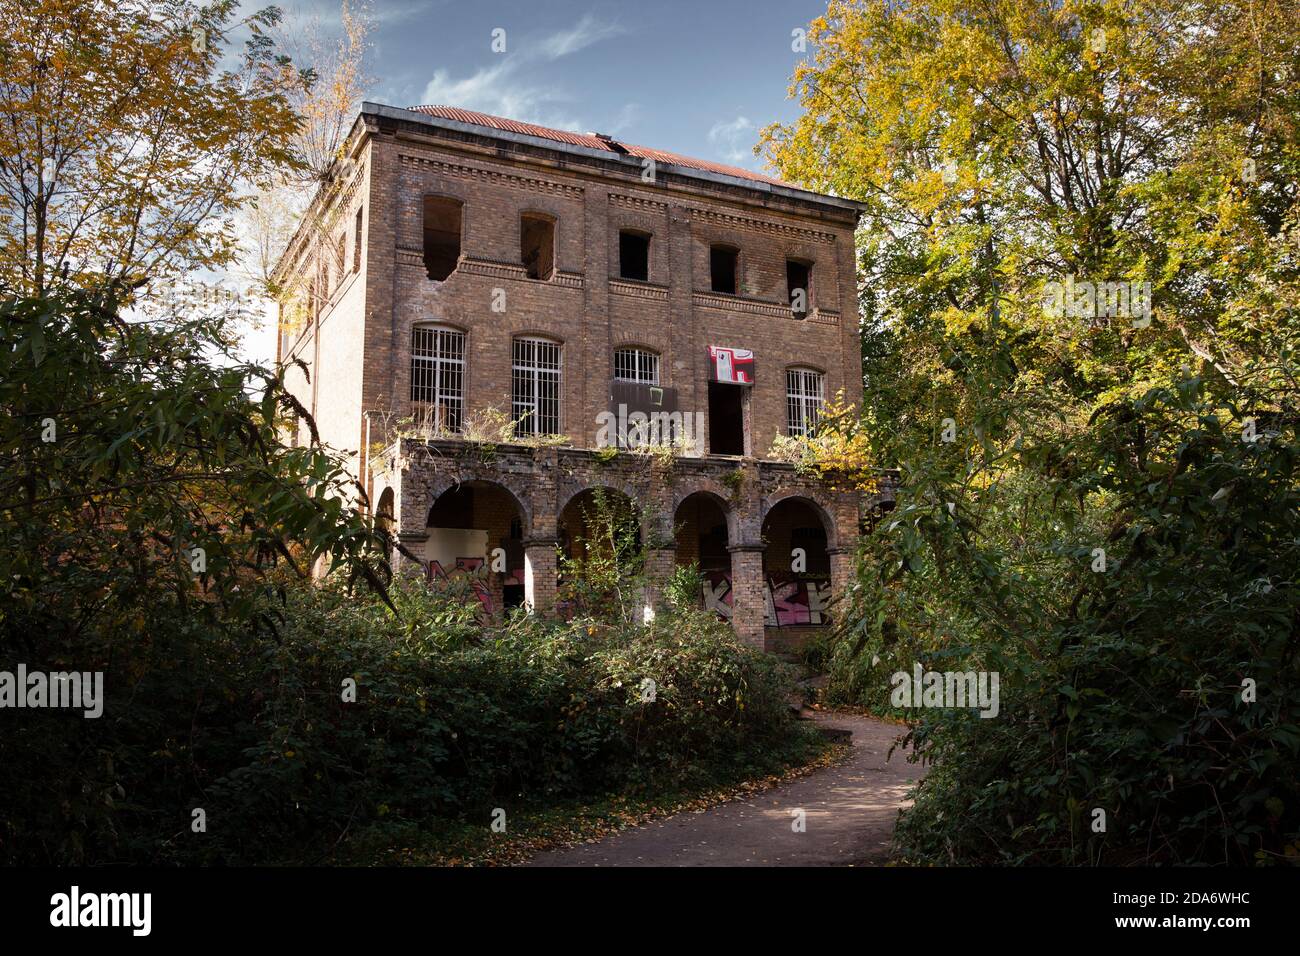 La casa Fuehlingen (Villa Oppenheim) en Neusser Landstrasse en Fuehlingen, casa fantasma, abandonado, vacante, Colonia, Alemania. Das Haus Fuehlingen (V Foto de stock